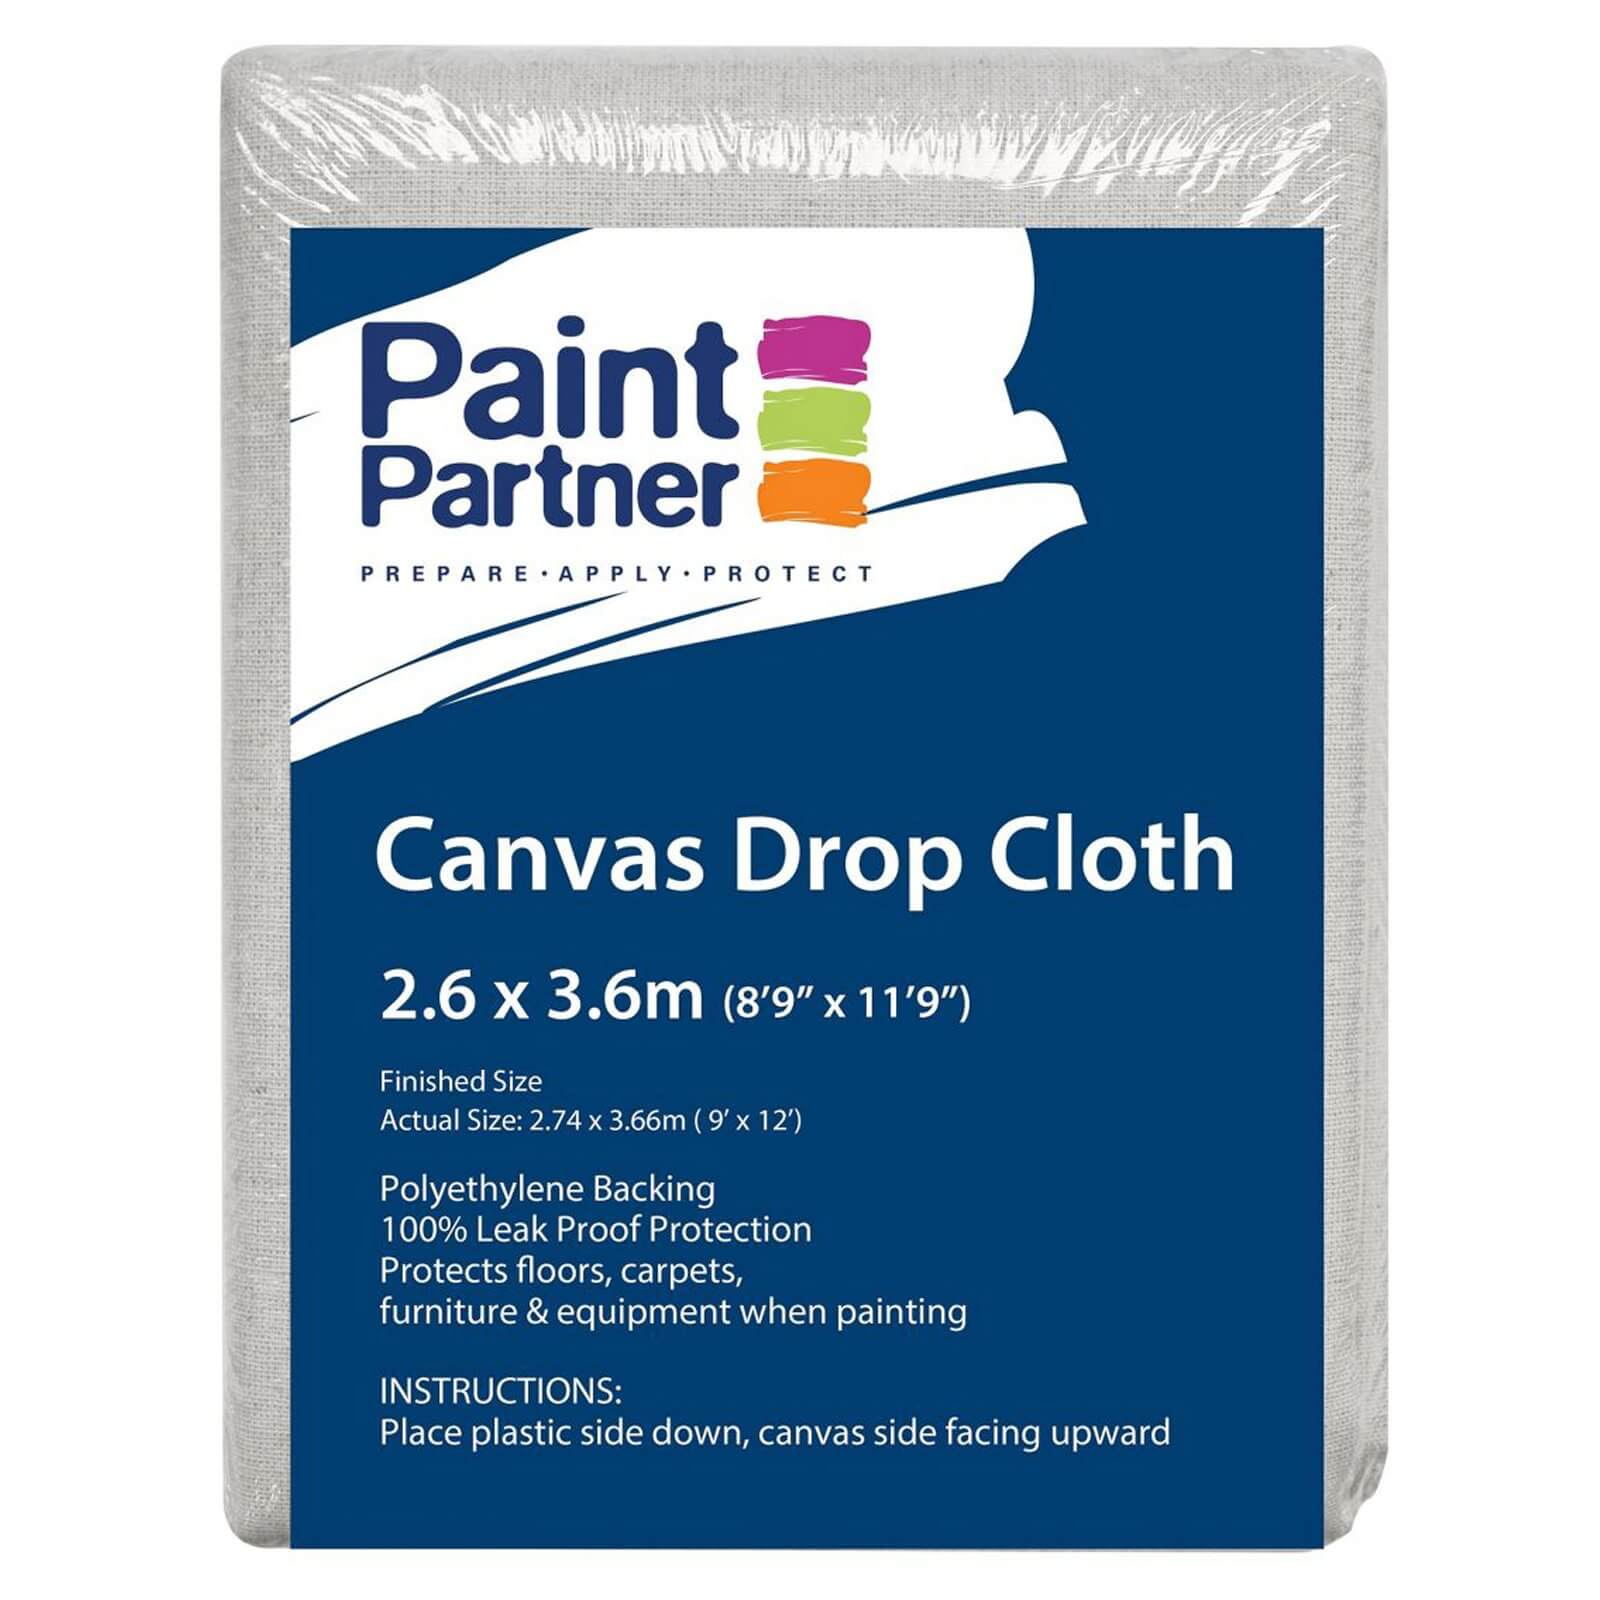 Paint Partner Canvas Drop Sheet - 2.6m x 3.6m